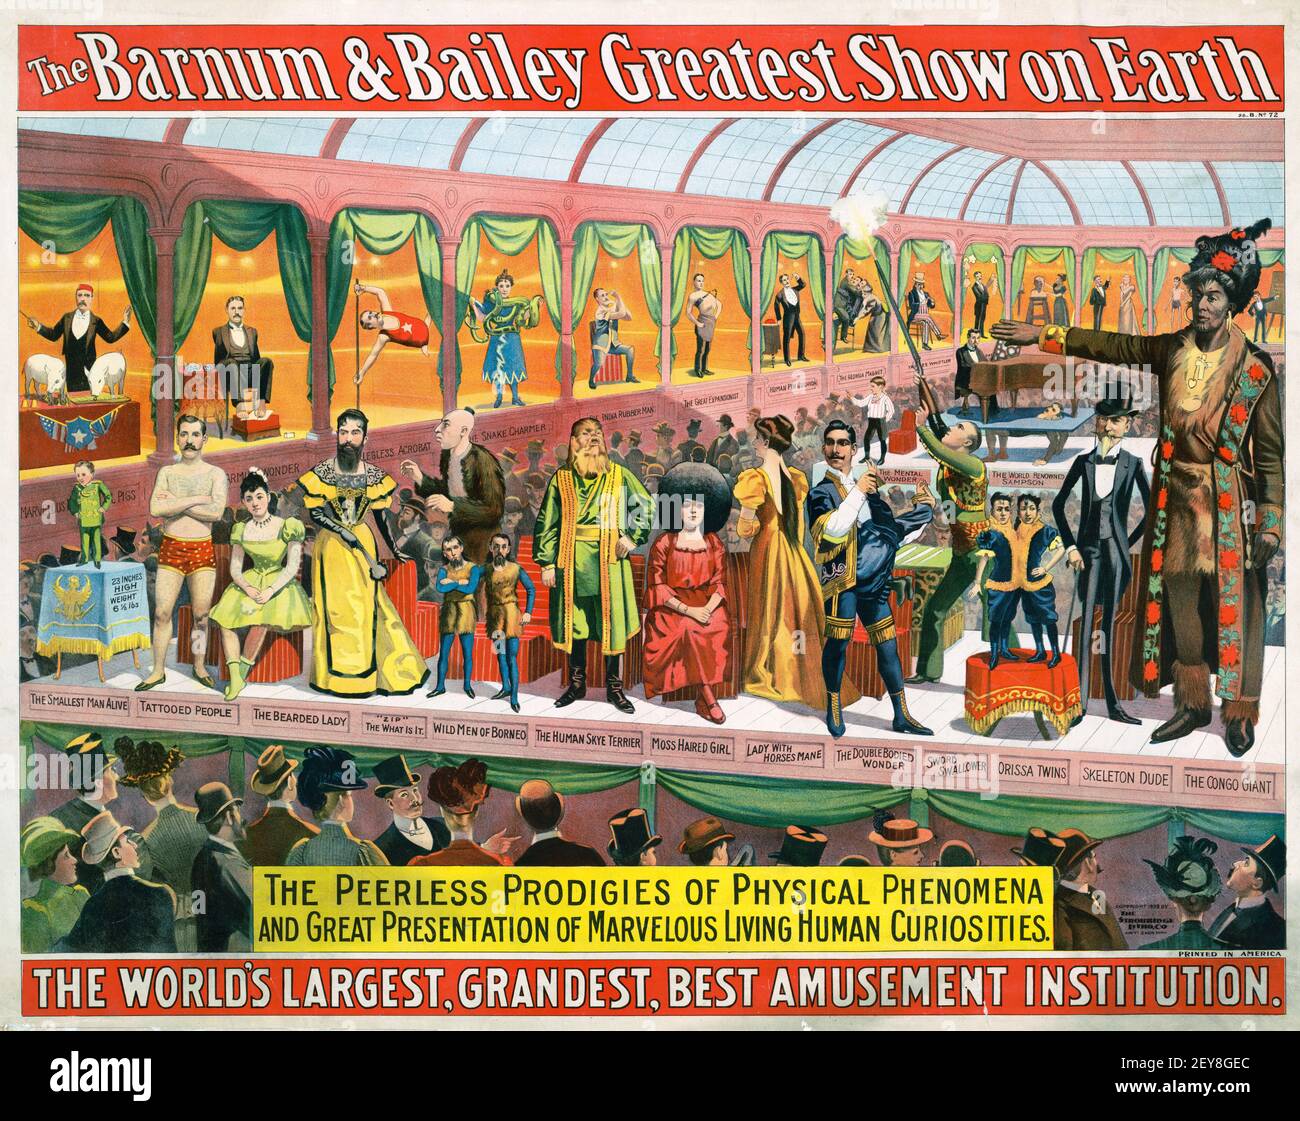 Die Barnum & Bailey Greatest Show auf Erden. Zirkusposter, alter und Vintage-Stil. Antike Werbetafel. Die unvergleichlichen Wunderkinder physischer Phänomene. Stockfoto